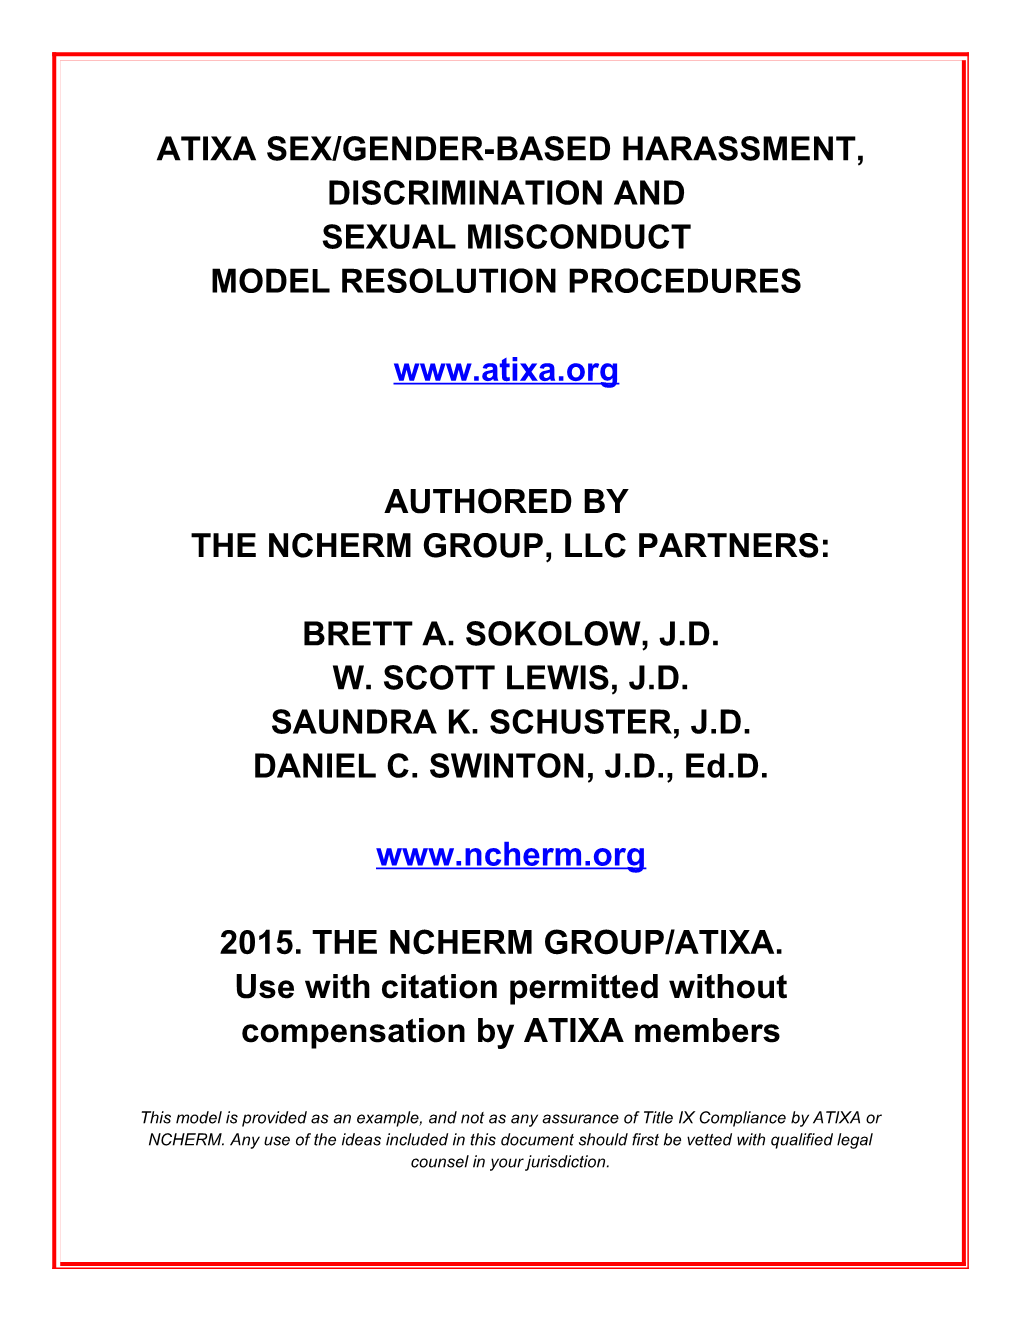 Atixa Sex/Gender-Based Harassment, Discrimination And